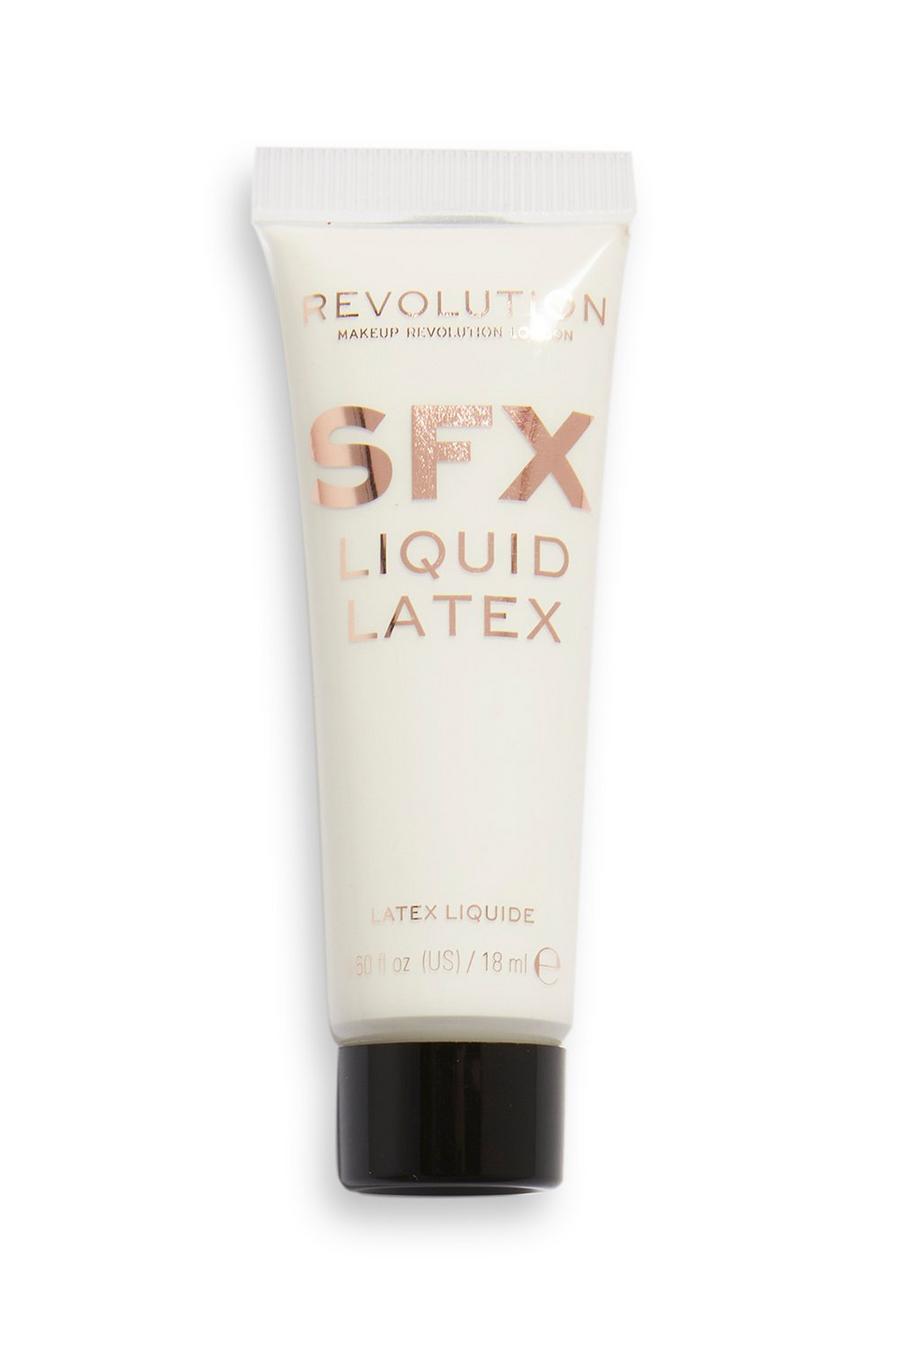 Revolution - Latex liquide - Creator SFX, Red